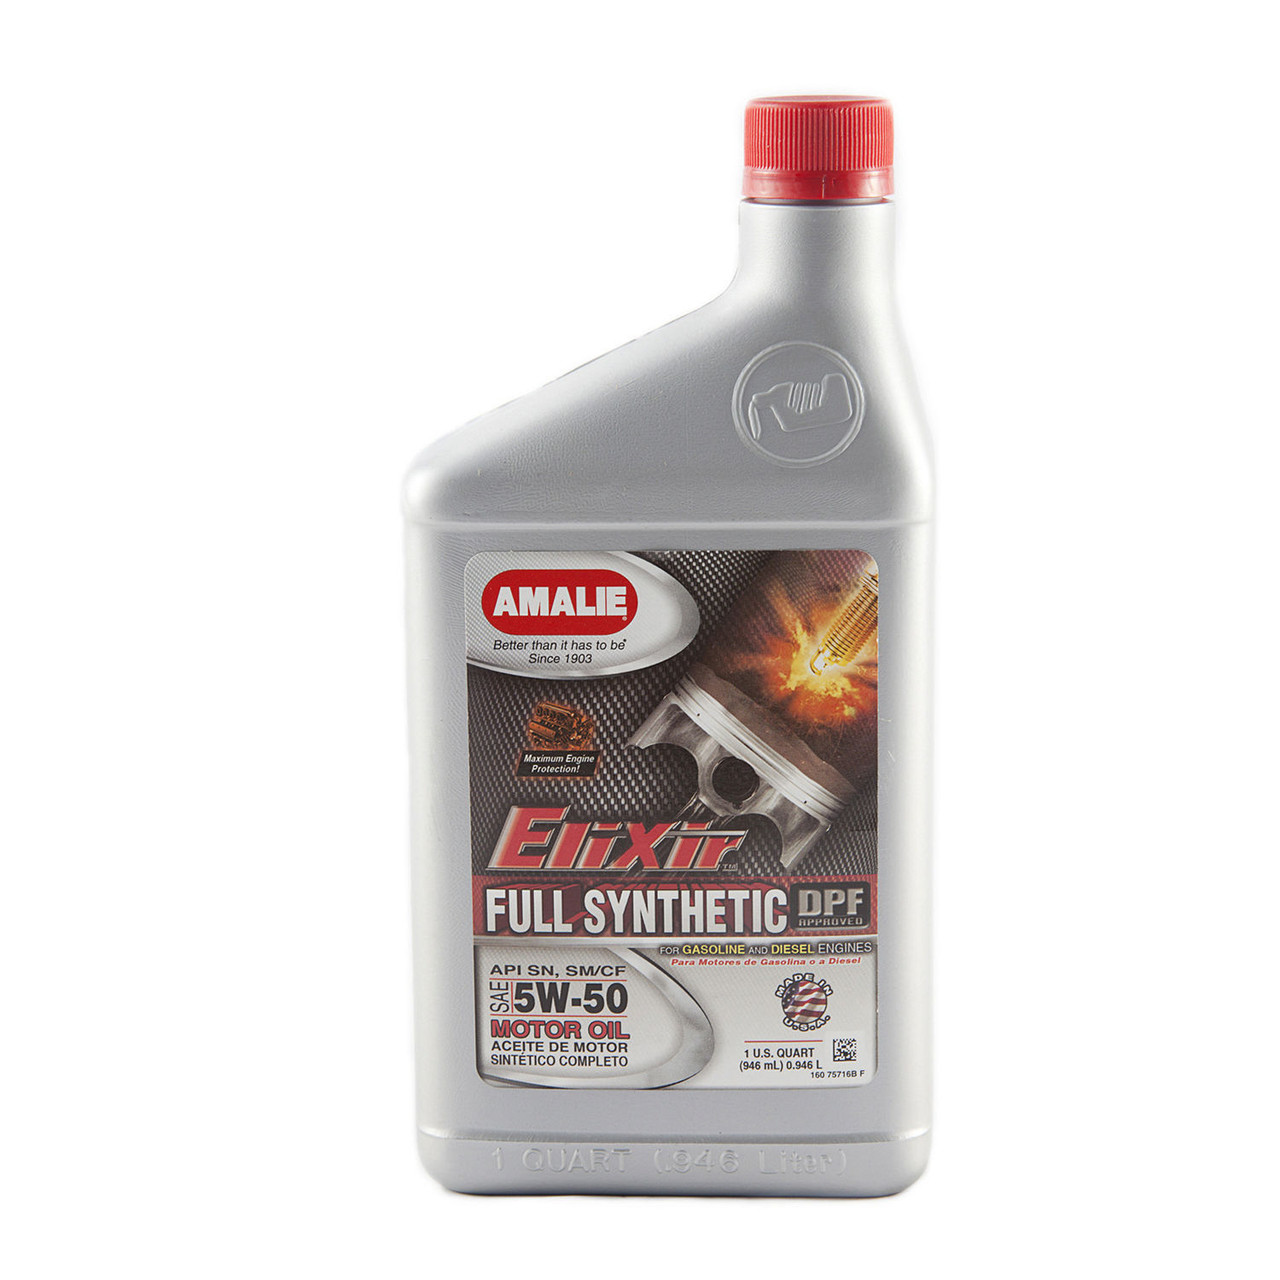 Elixir Full Synthetic 5w50 Oil Case 12x1Qt AMA160-75716-56